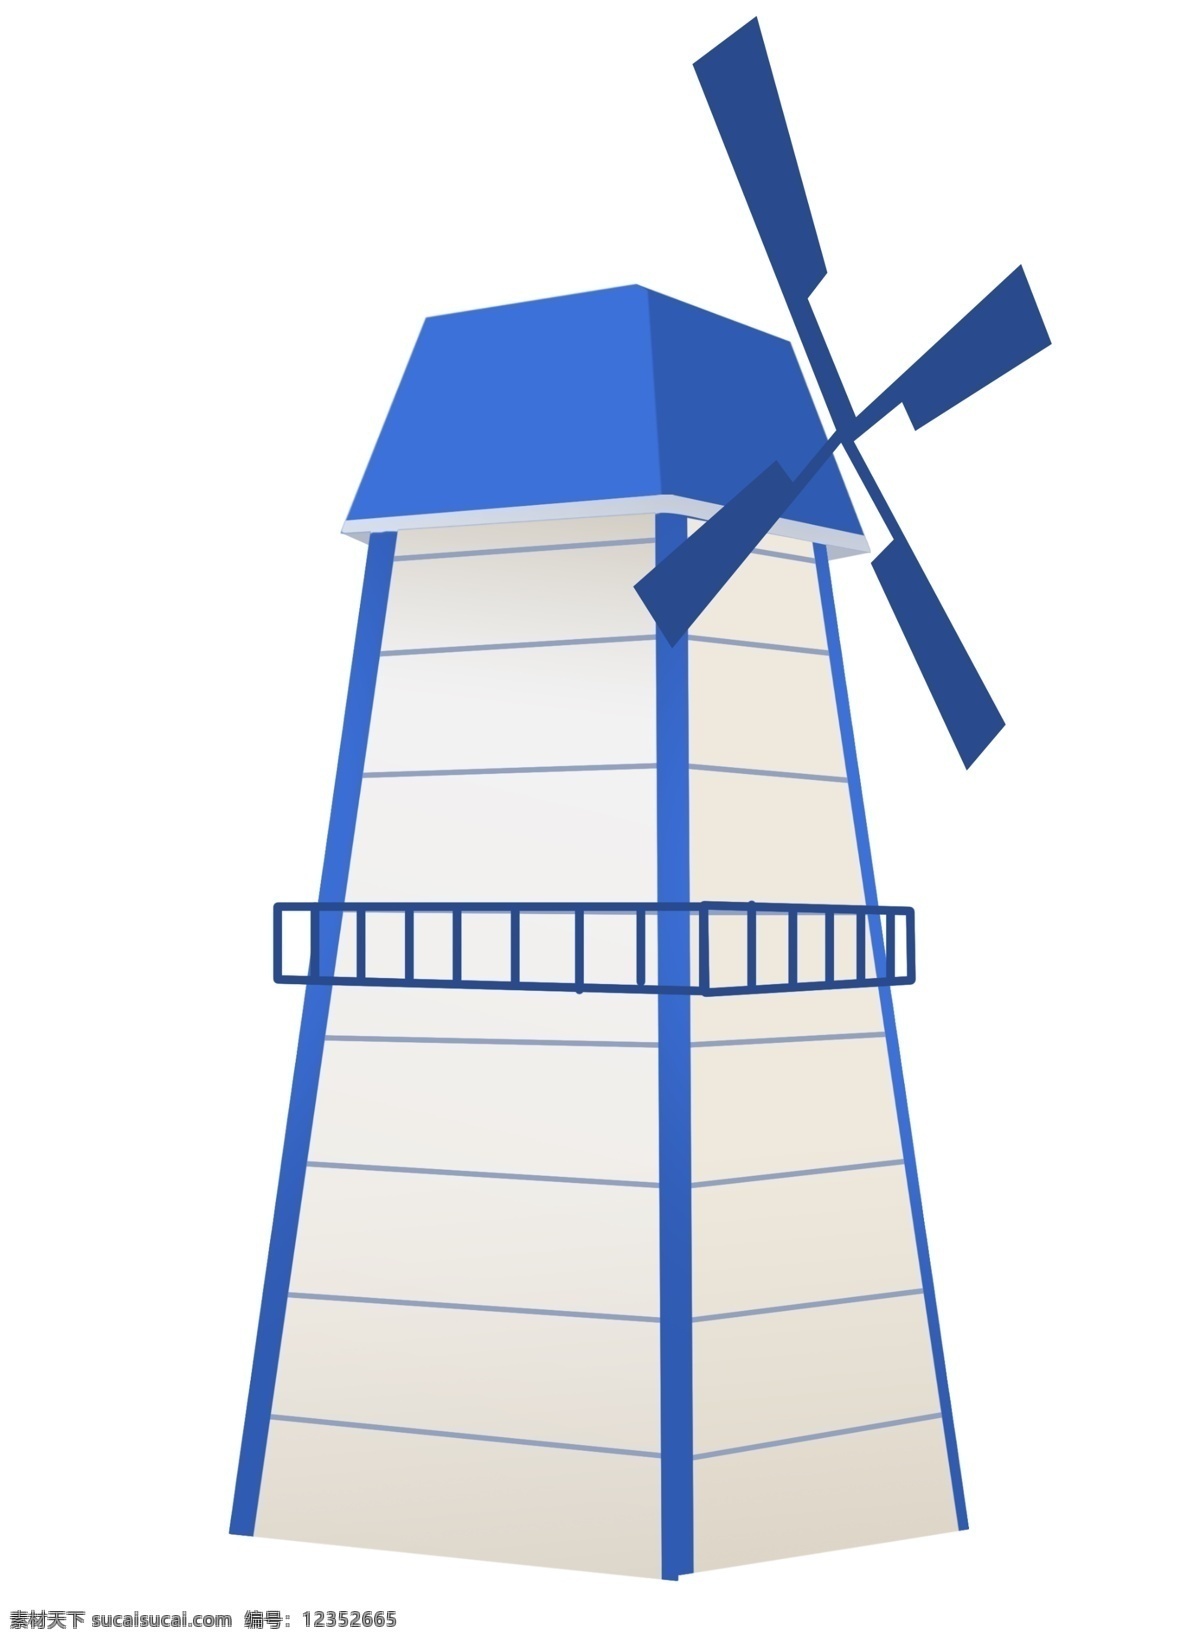 蓝色 风车 装饰 插画 蓝色的风车 风车建筑 漂亮的风车 木头风车 木质风车 精美风车 卡通风车